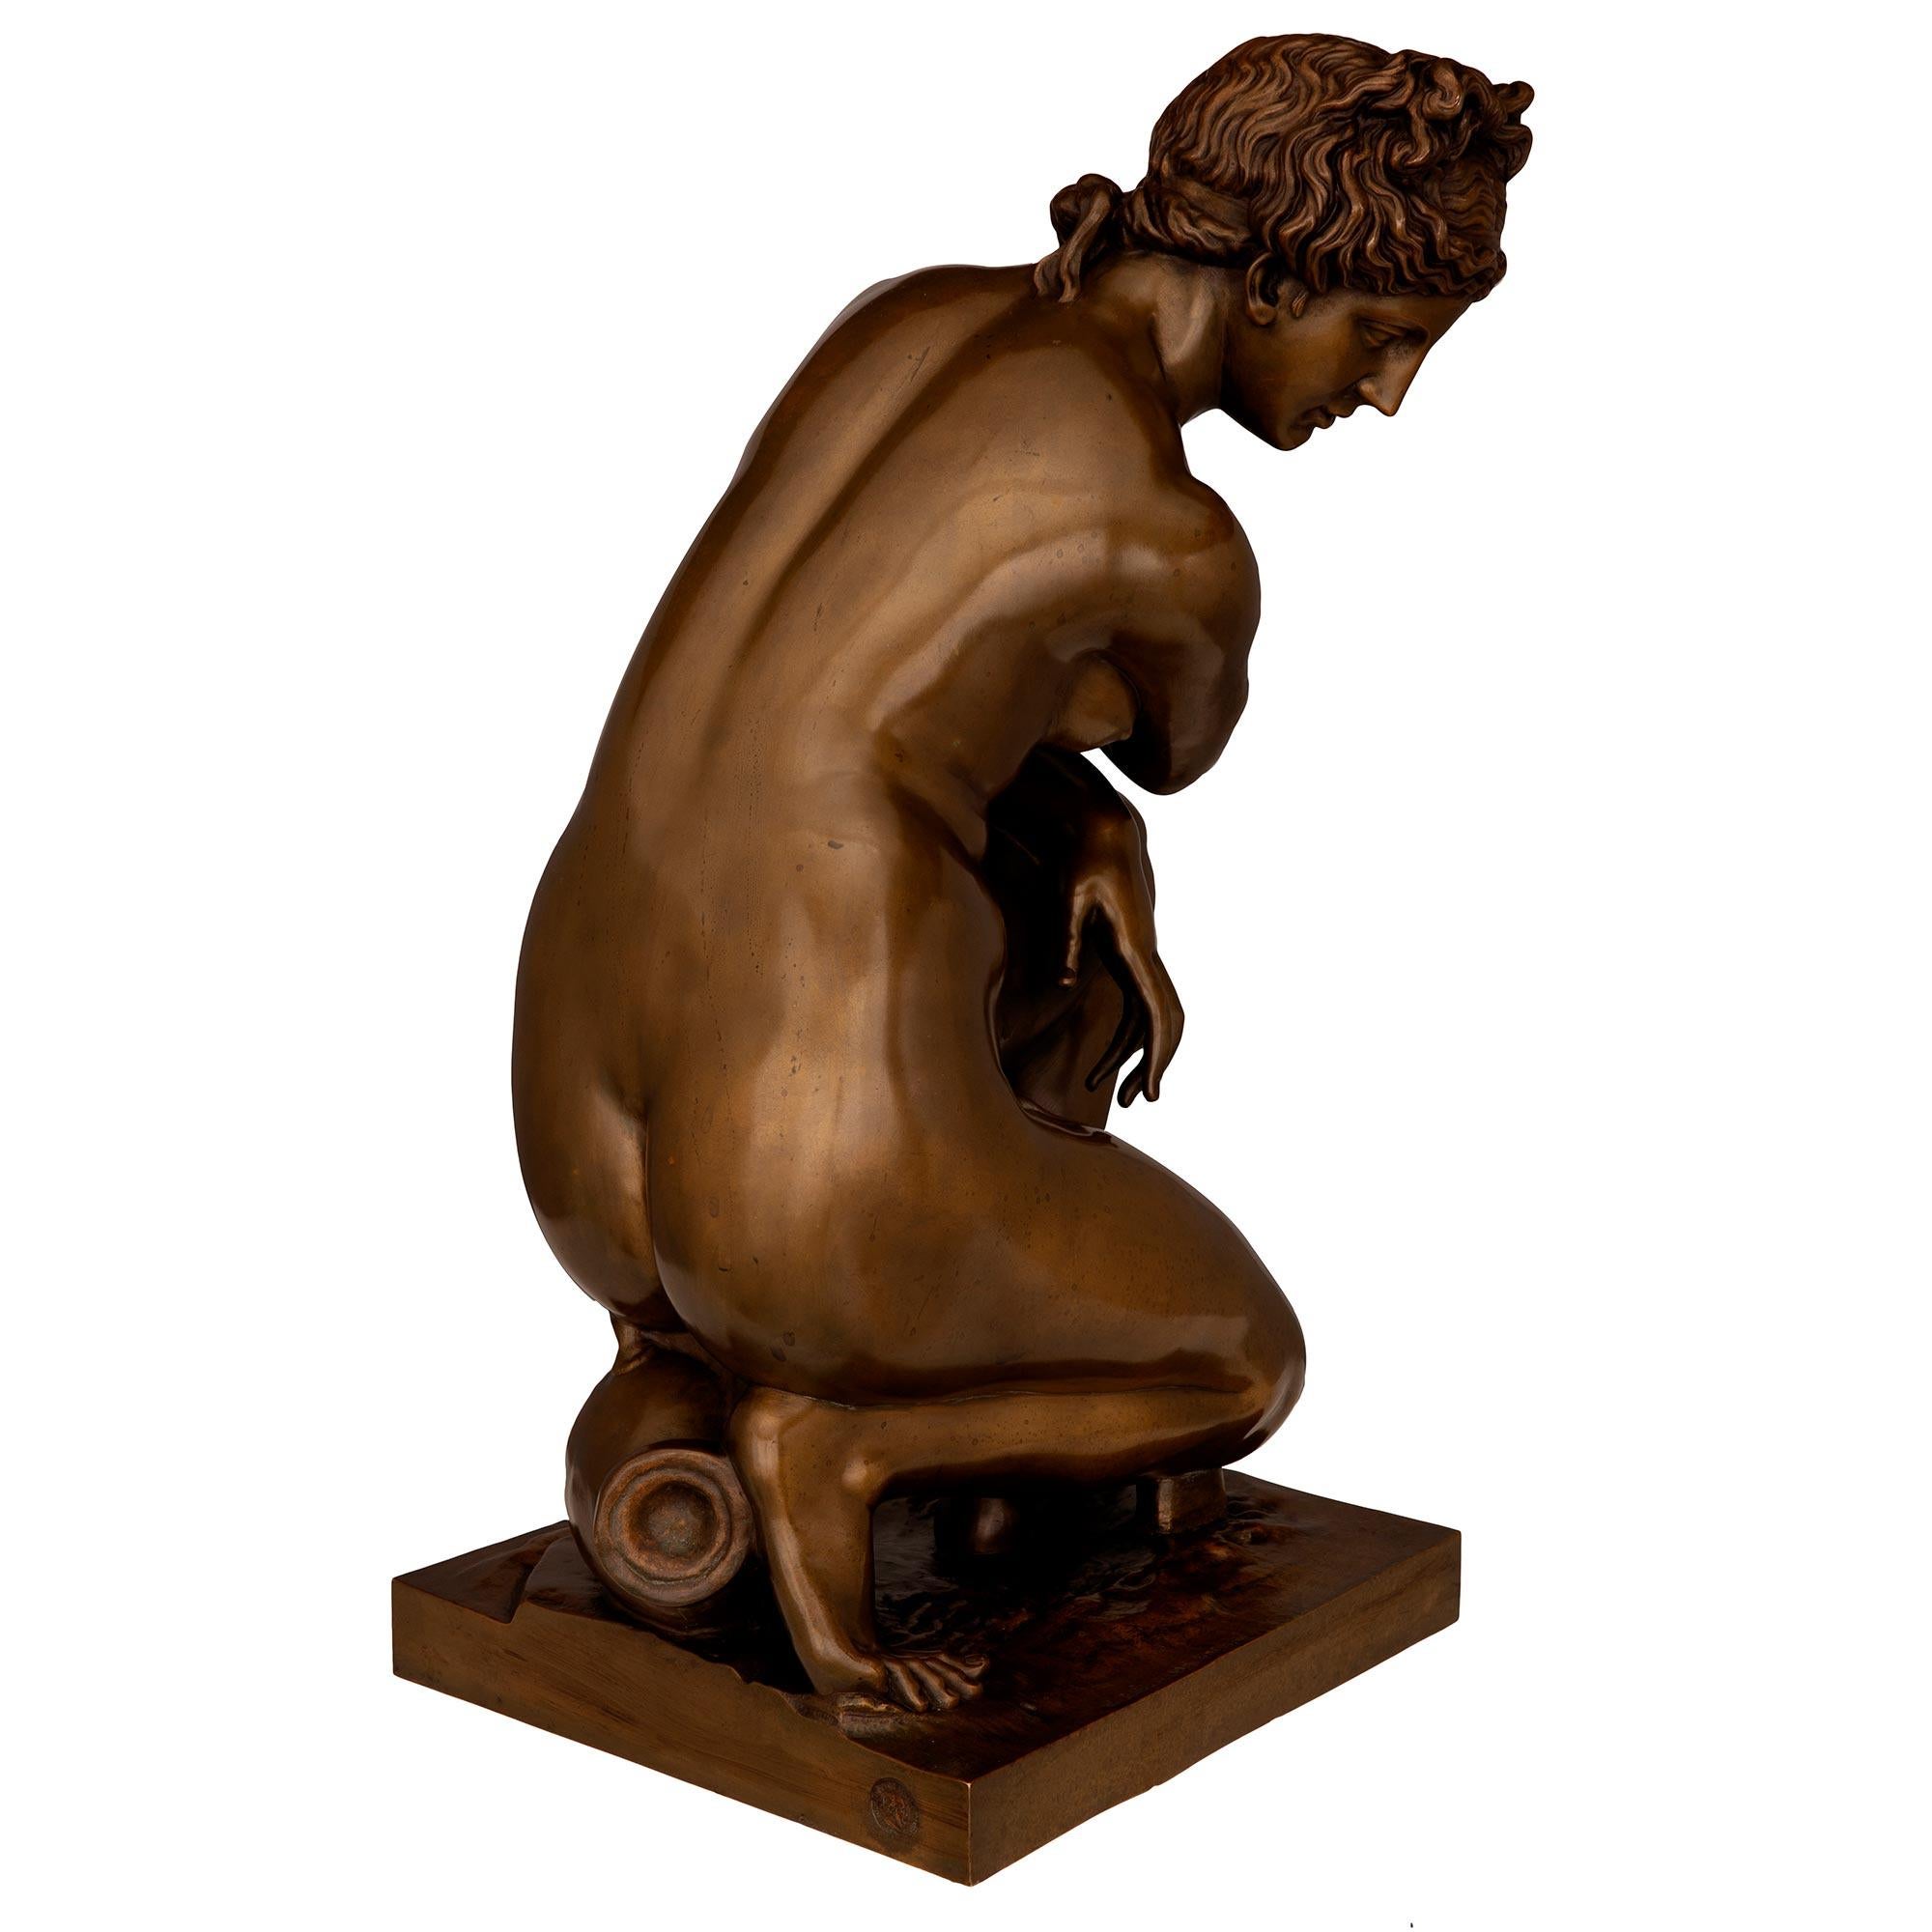 Statue classique et très élégante de Vénus agenouillée en bronze patiné du XIXe siècle, signée F. Barbedienne Fondeur et estampillée 